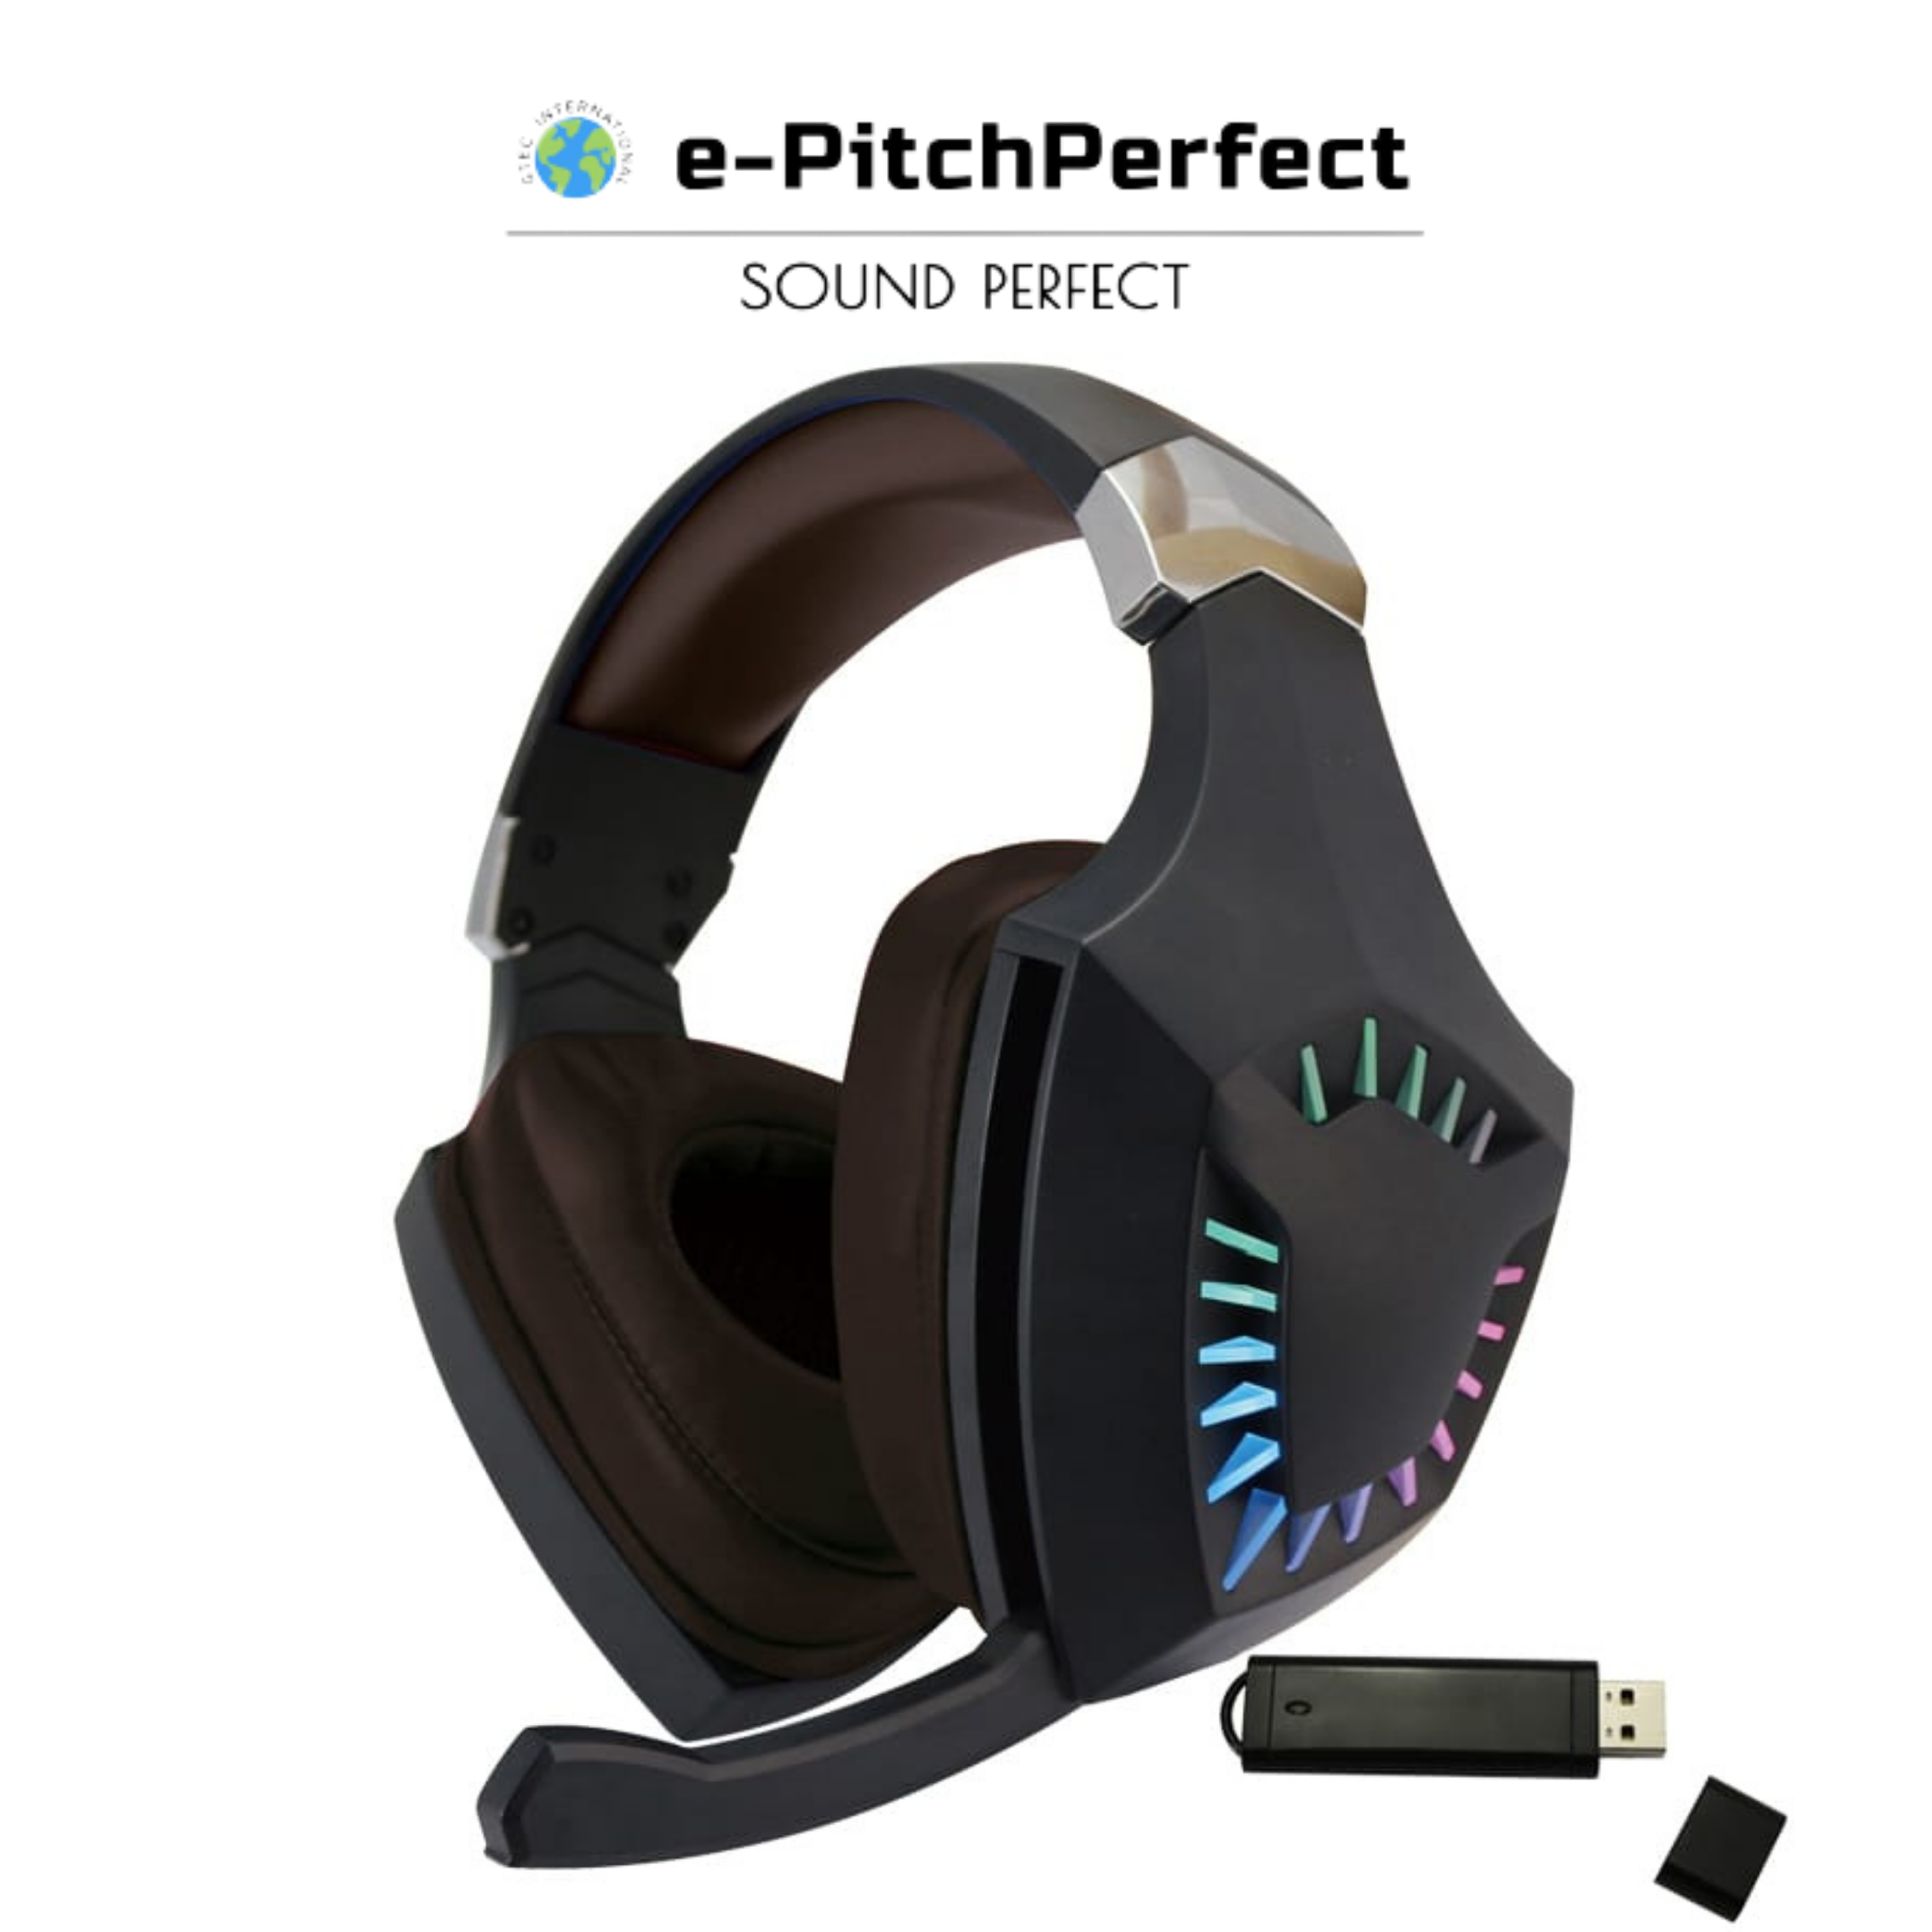 Bezdrátová herní náhlavní souprava e-PitchPerfect e-PP 2,4G s mikrofonem kompatibilní s PS4, Xbox One, notebooky, PC, iPhone a telefony Android Navrženo a vyrobeno v USA